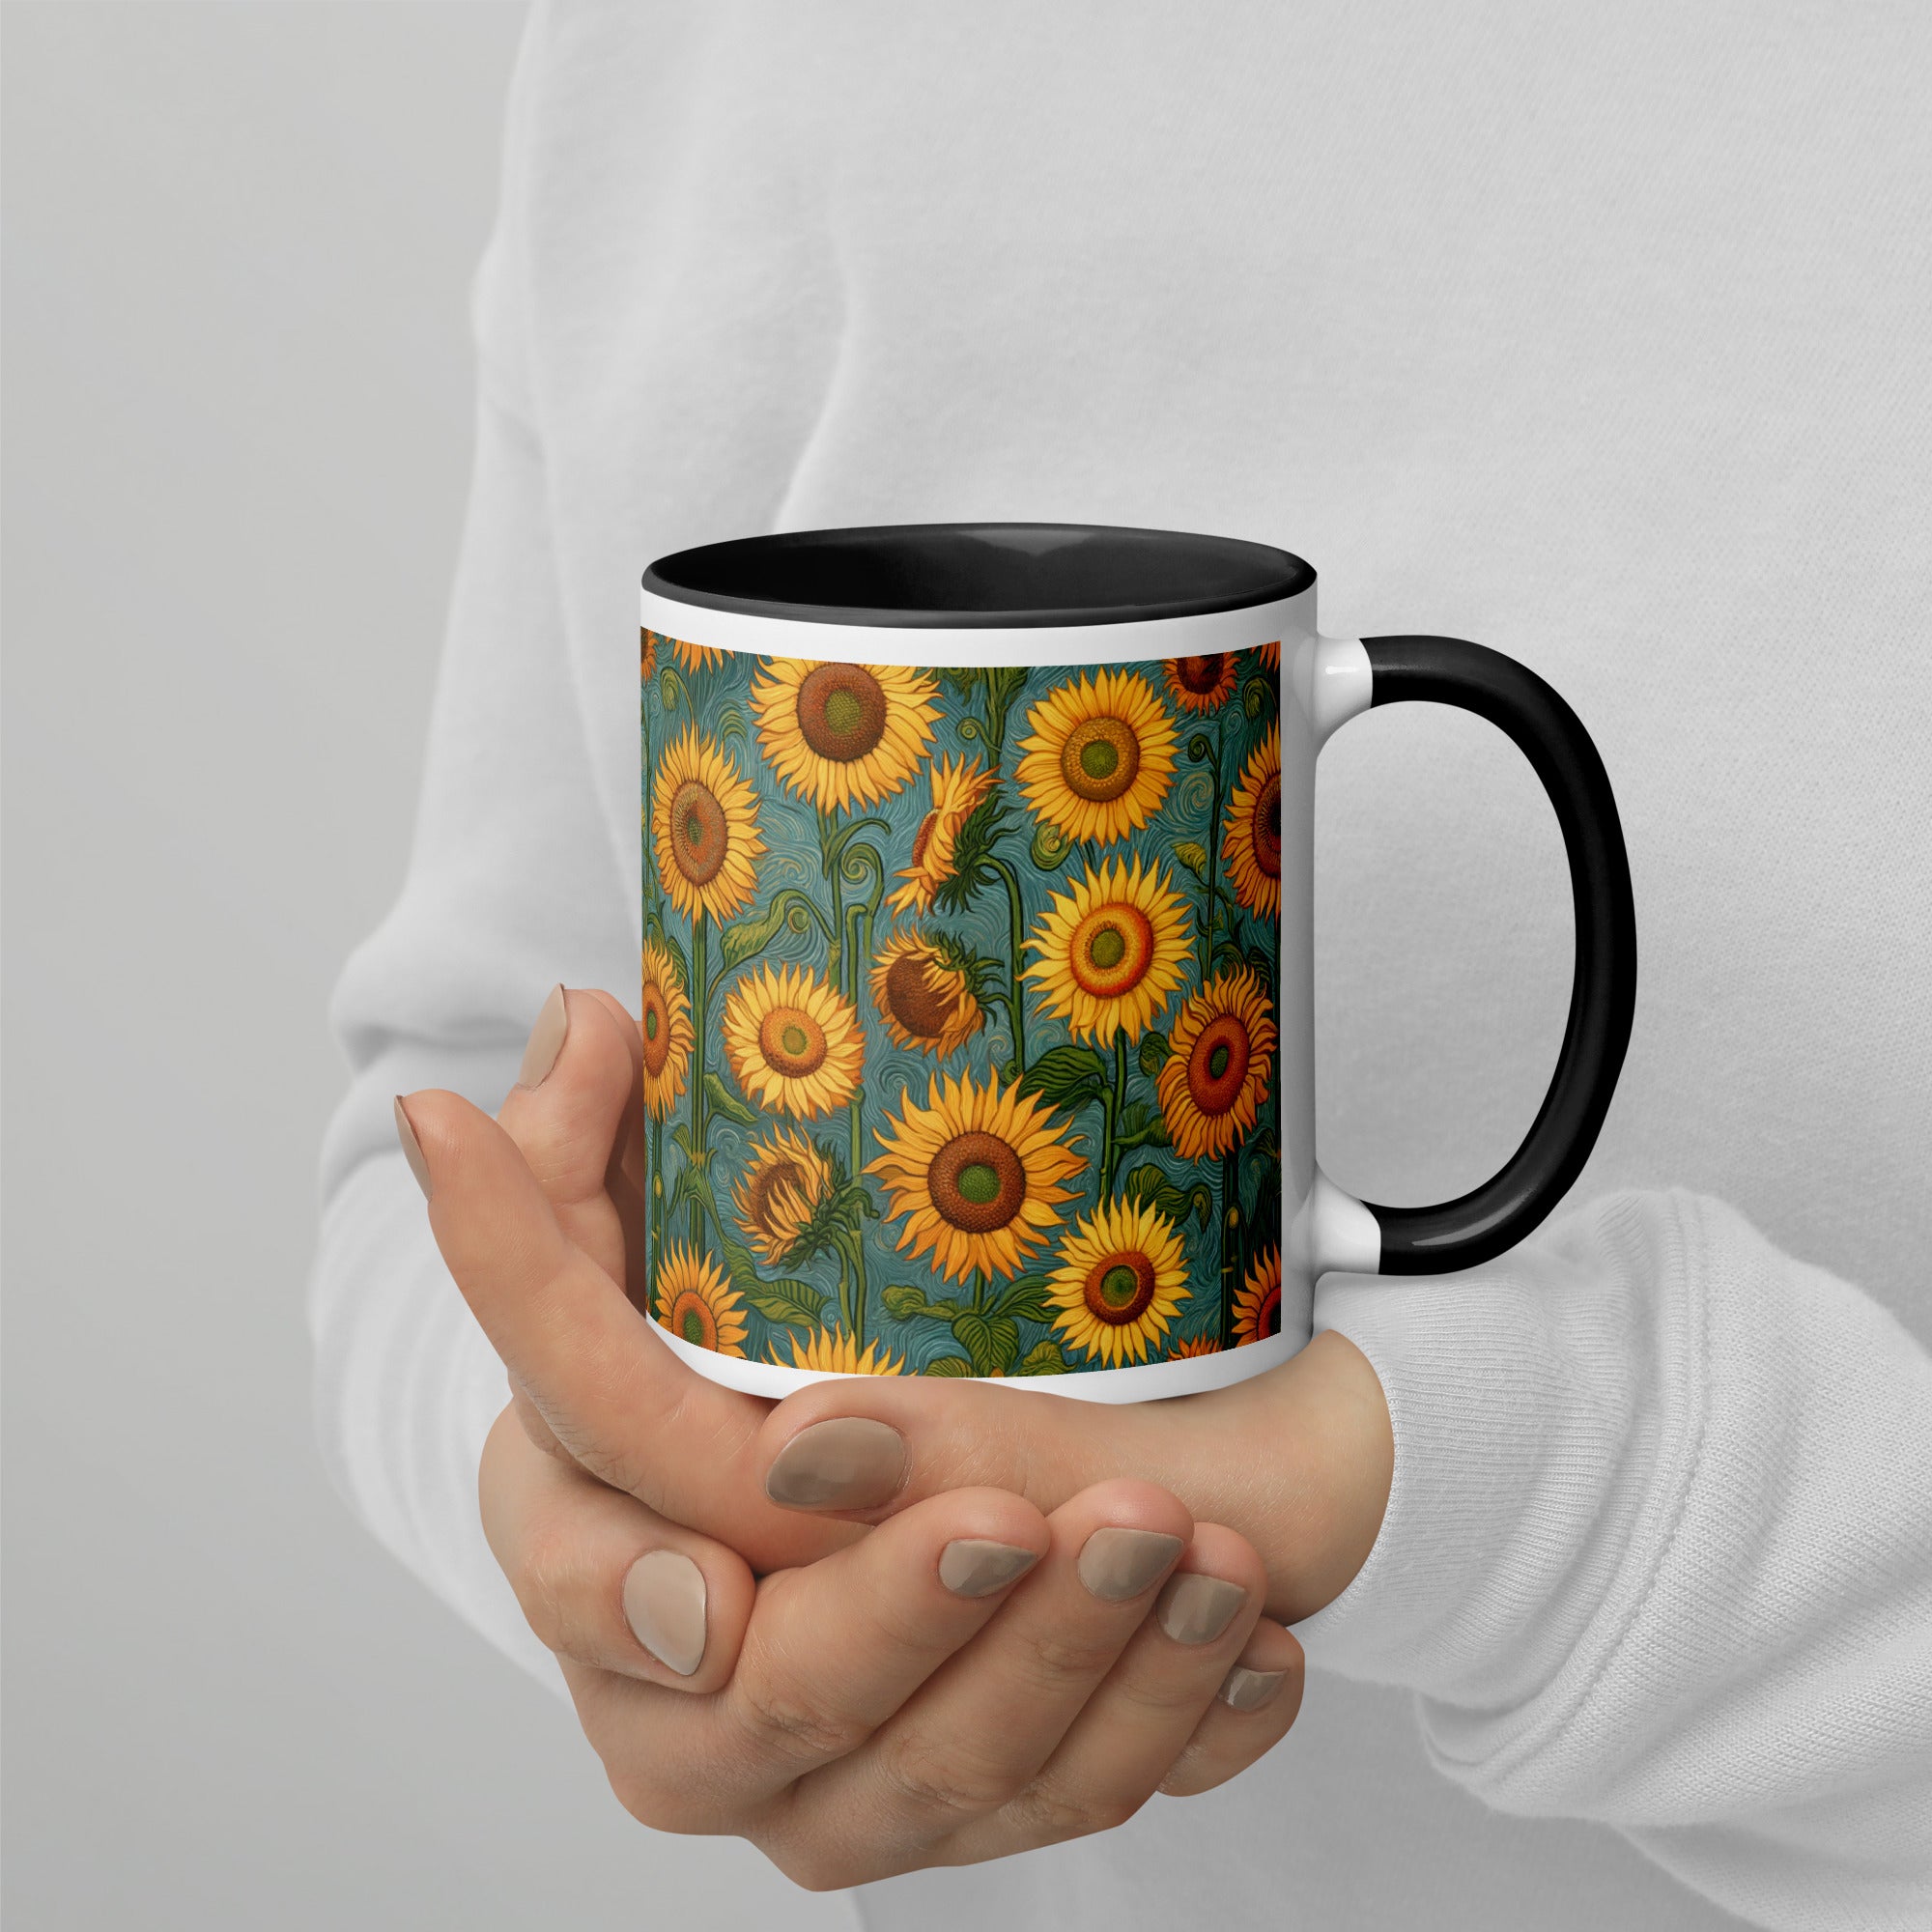 Keramiktasse „Sonnenblumen“ von Vincent van Gogh, berühmtes Gemälde | Hochwertige Kunsttasse